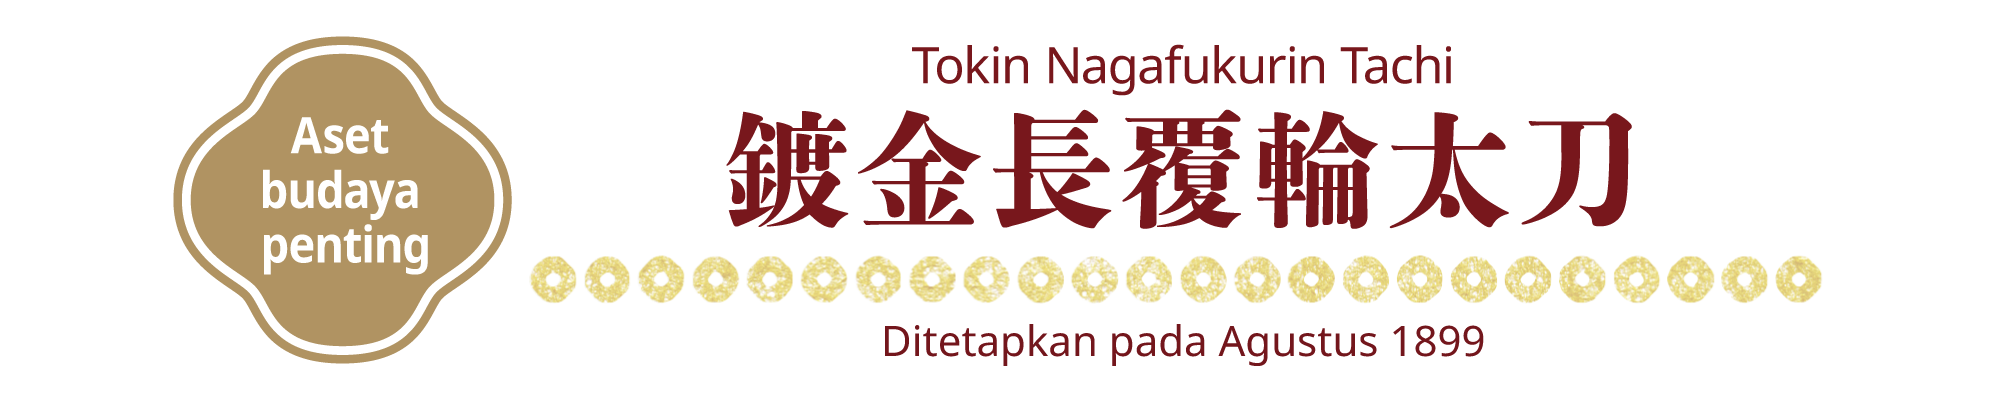 [Aset budaya penting]Tokin Nagafukurin Tachi, Ditetapkan pada Agustus 1899